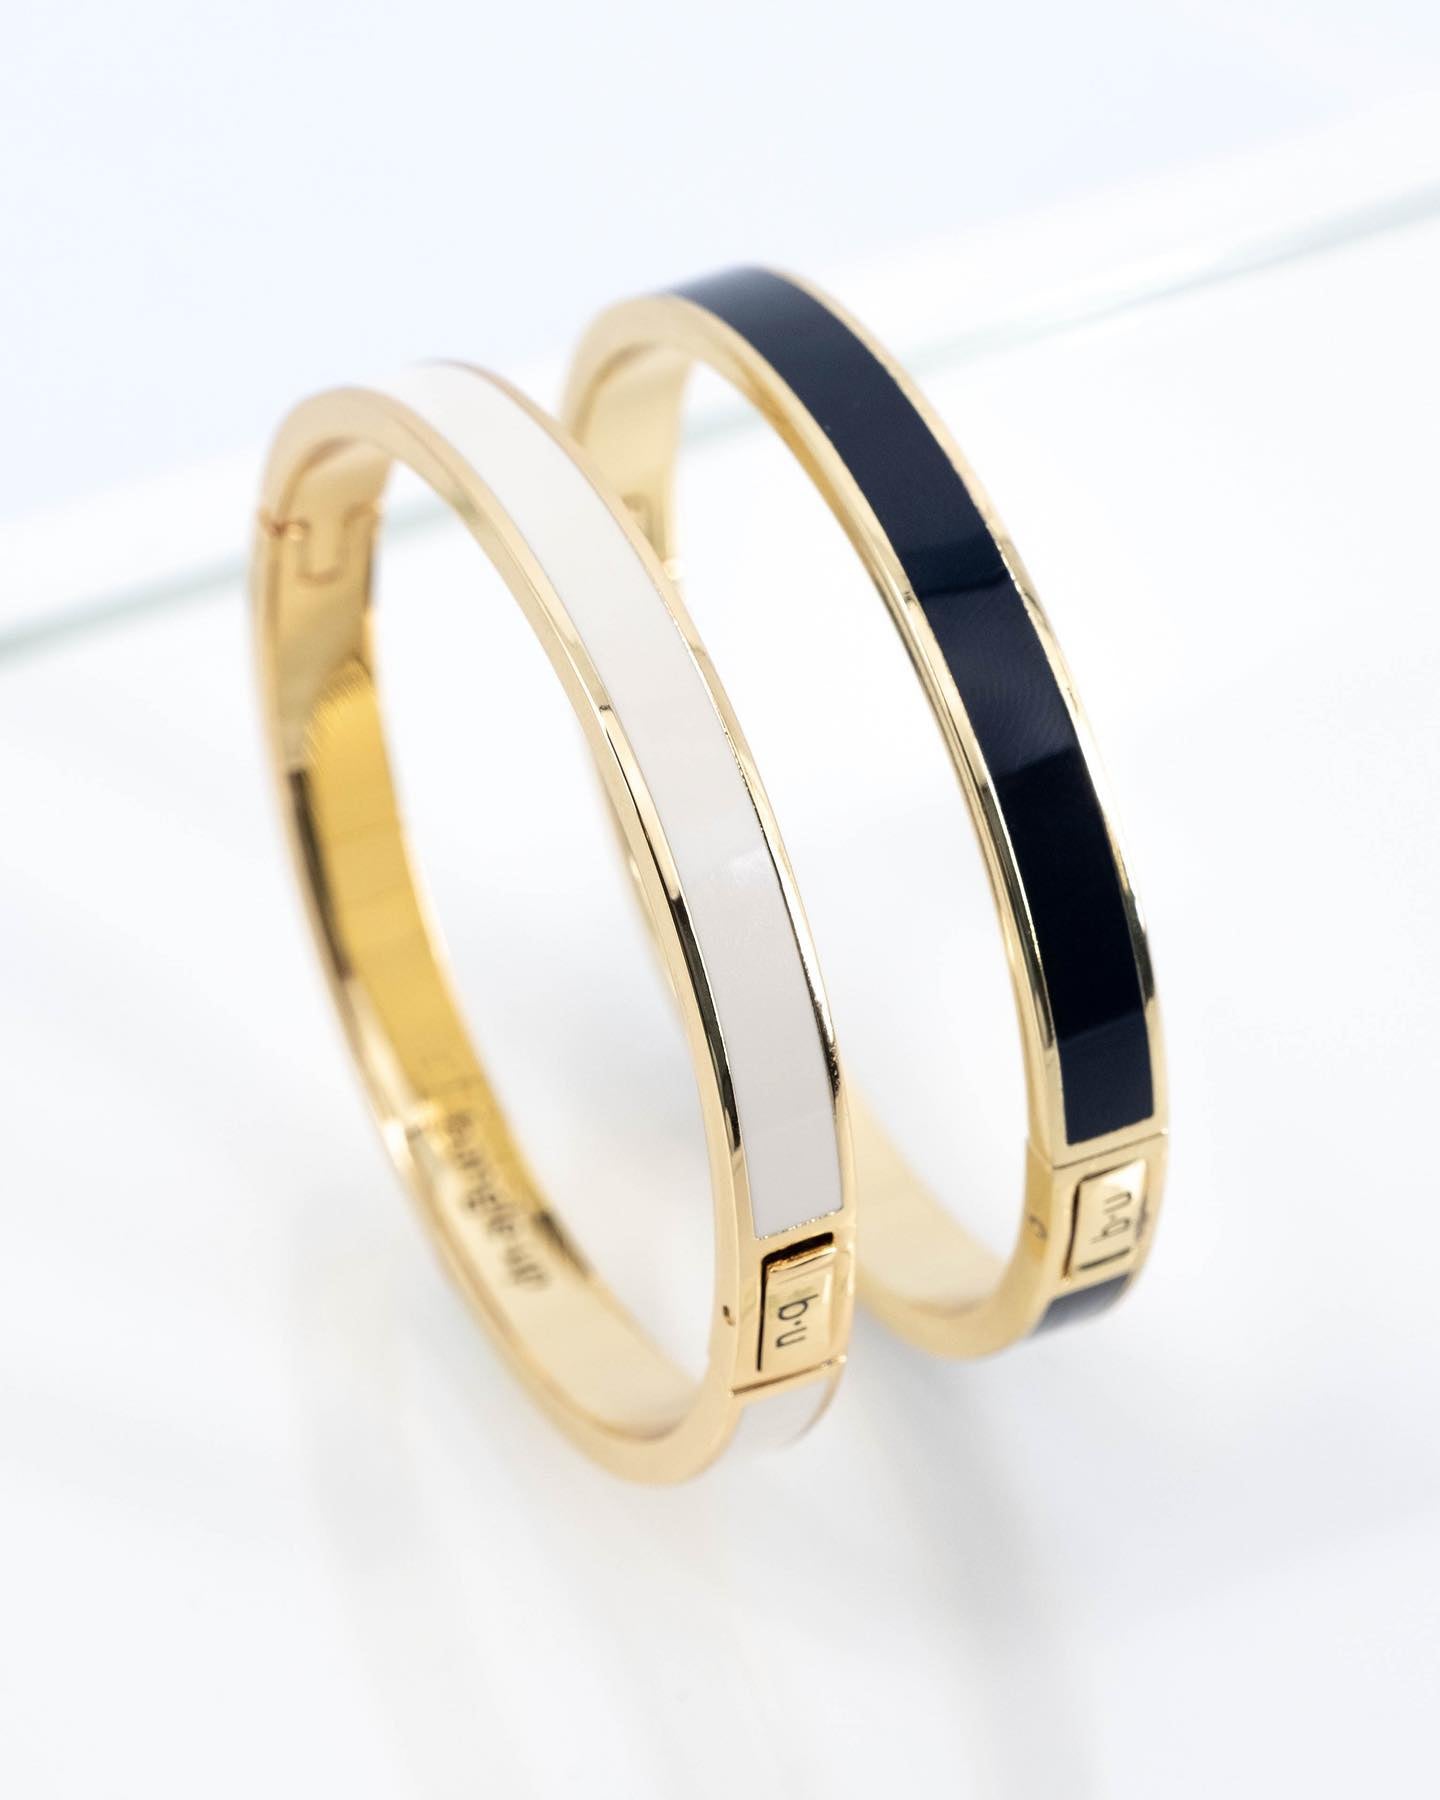 https://www.instagram.com/p/CzX80w3oMNf/[SHARP-CAPTION]What is your favorite color : white or blue ? 

Notre bracelet bangle est disponible également dans d’autres couleurs sur notre eshop. 

#bangleupparis #bracelet #frenchjewelry #jewelry #accessories #gift #women